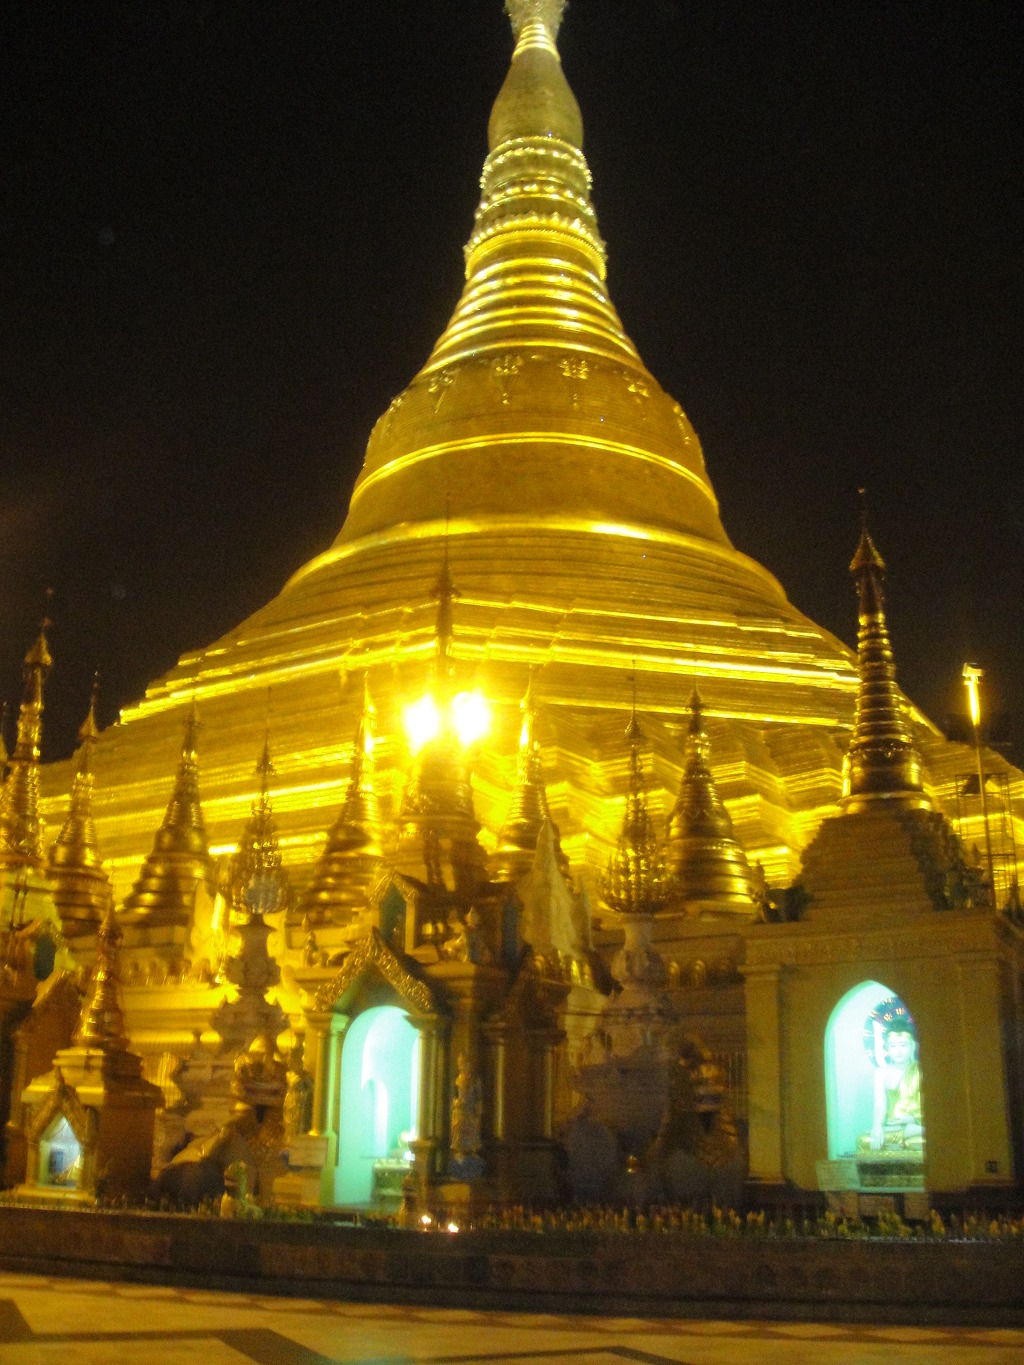 400만 불탑이 존재하는 불교국 미얀마를 상징하는 랑군 소재의 세다곤 파고다. 파고다 진입시 신발과 양말을 벗고 들어가 순례해야함.